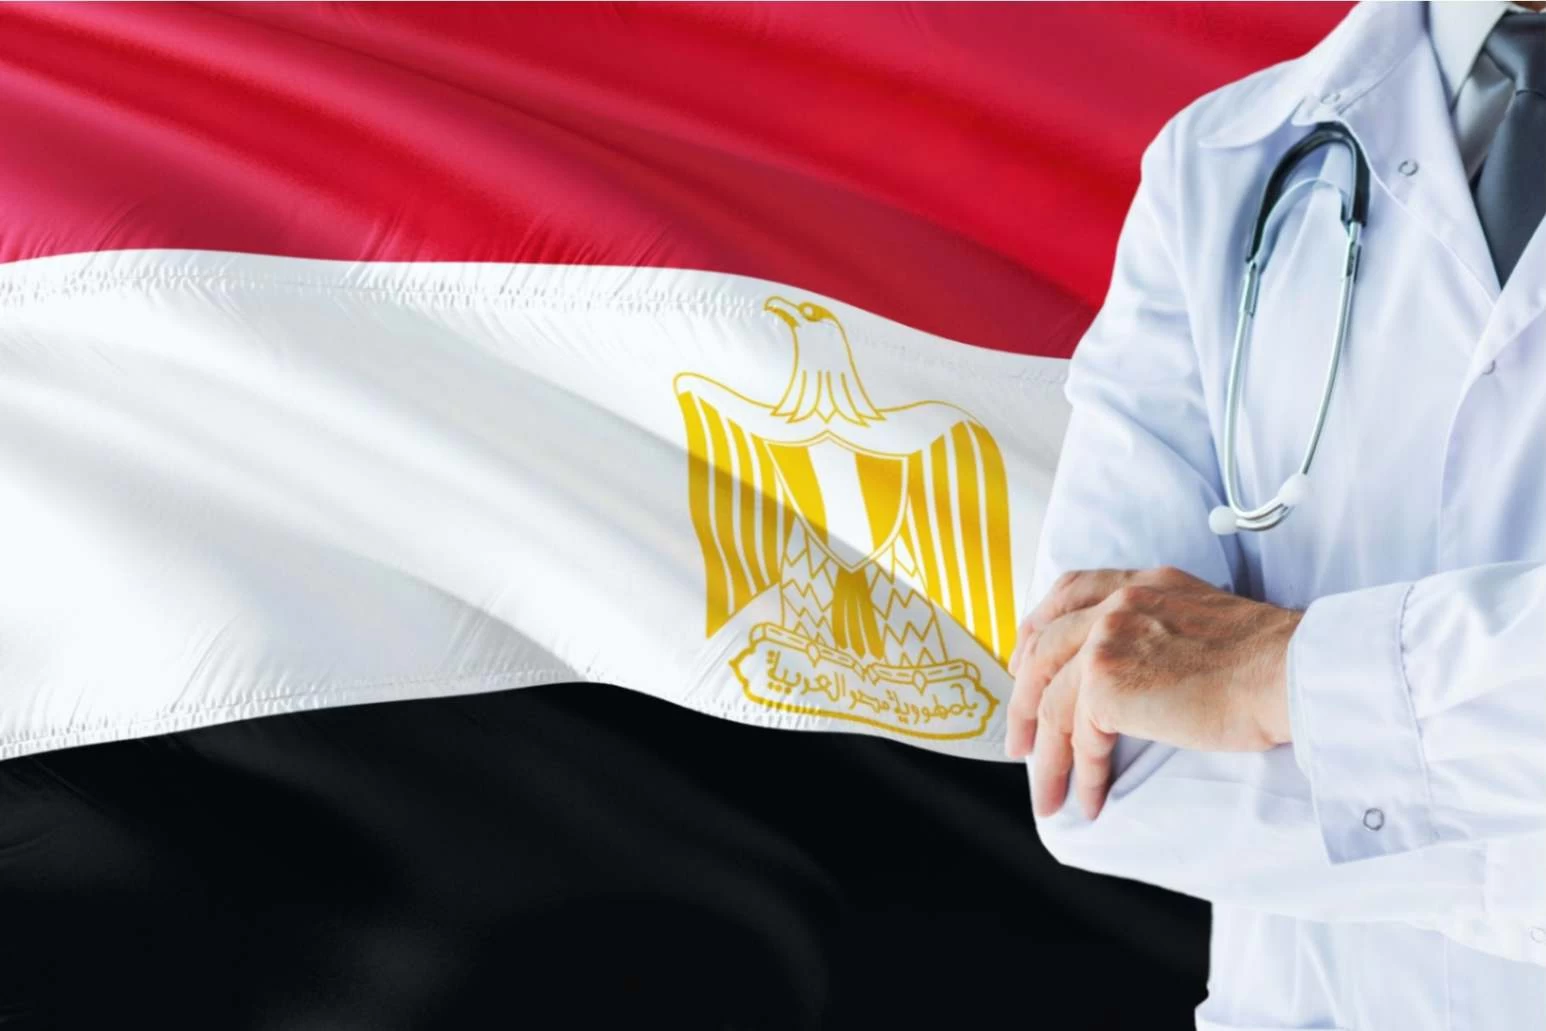 دليل الالتحاق بالبورد المصري للأطباء